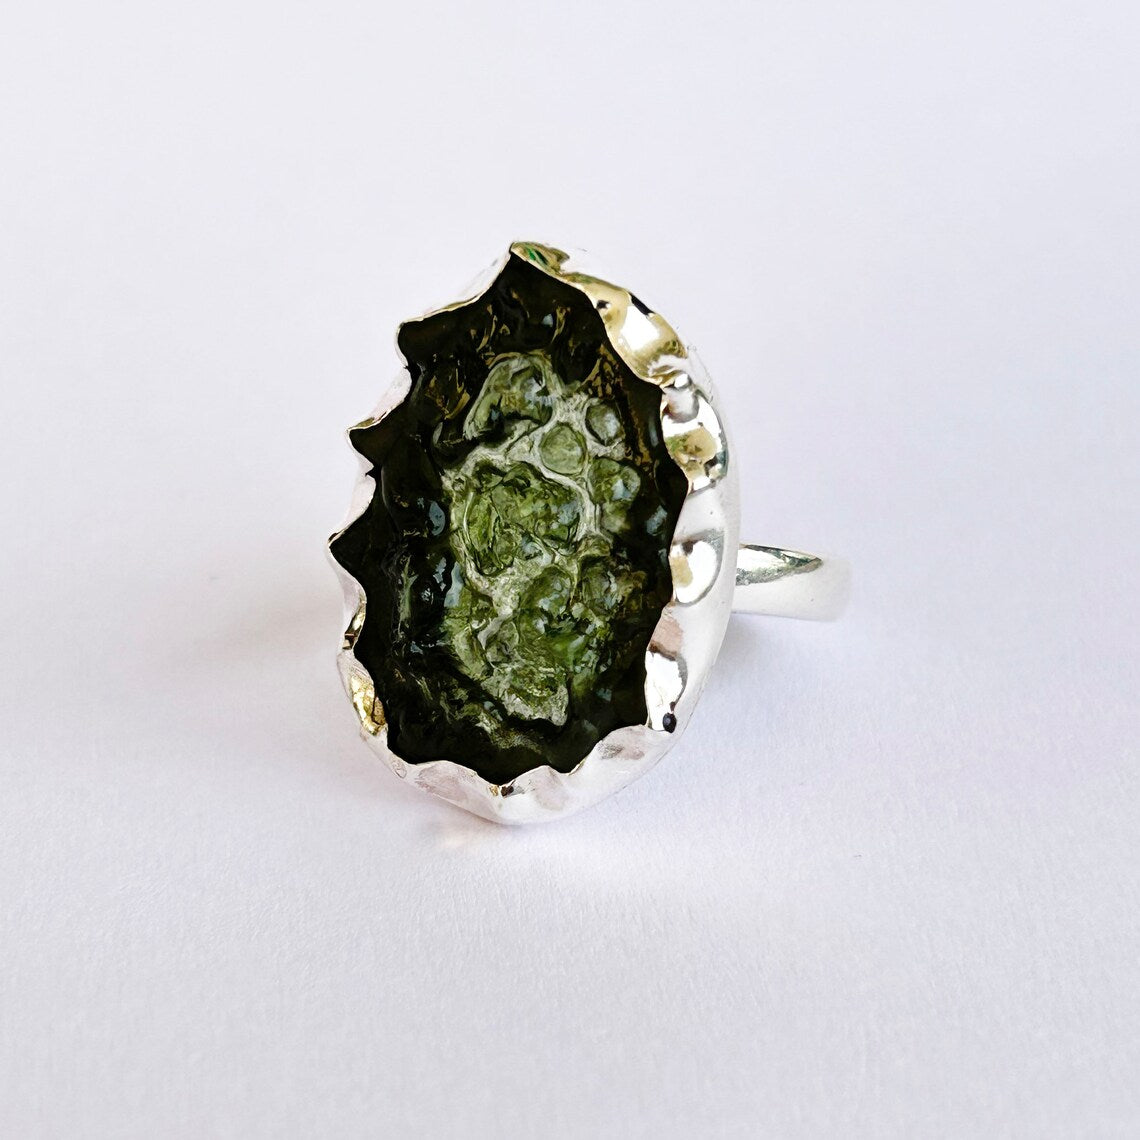 Raw Moldavite Ring - Natural Moldavite Ring - Sterling Silver Green Moldavite Ring - Moldavite Gemstone Silver Ring, Handmade Moldavite Ring